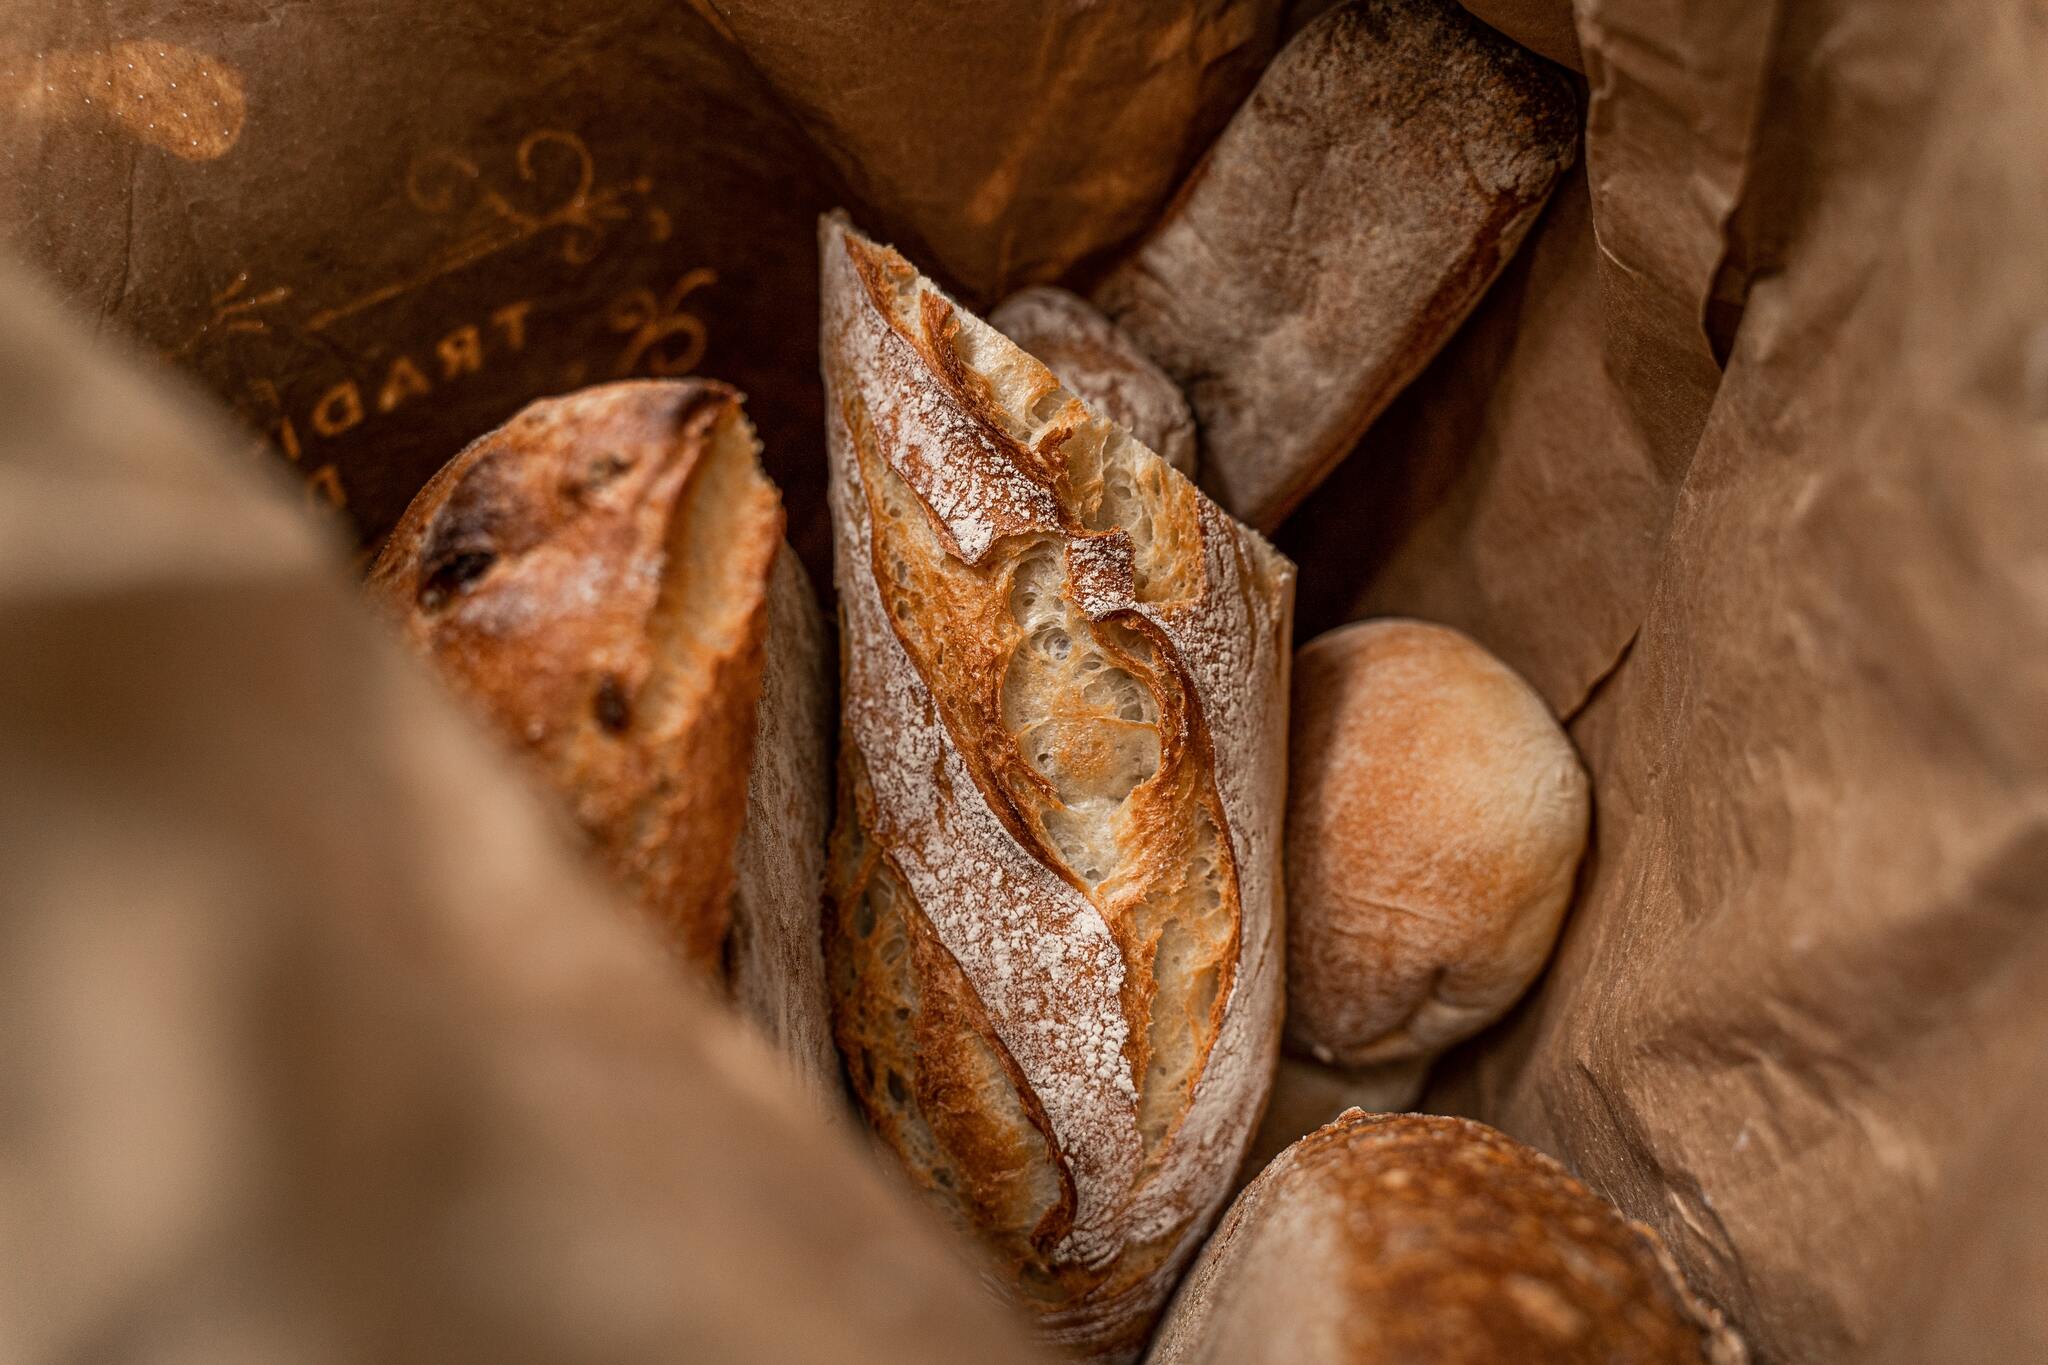 長棍麵包是法國遺產 立法規定配方馬虎不得